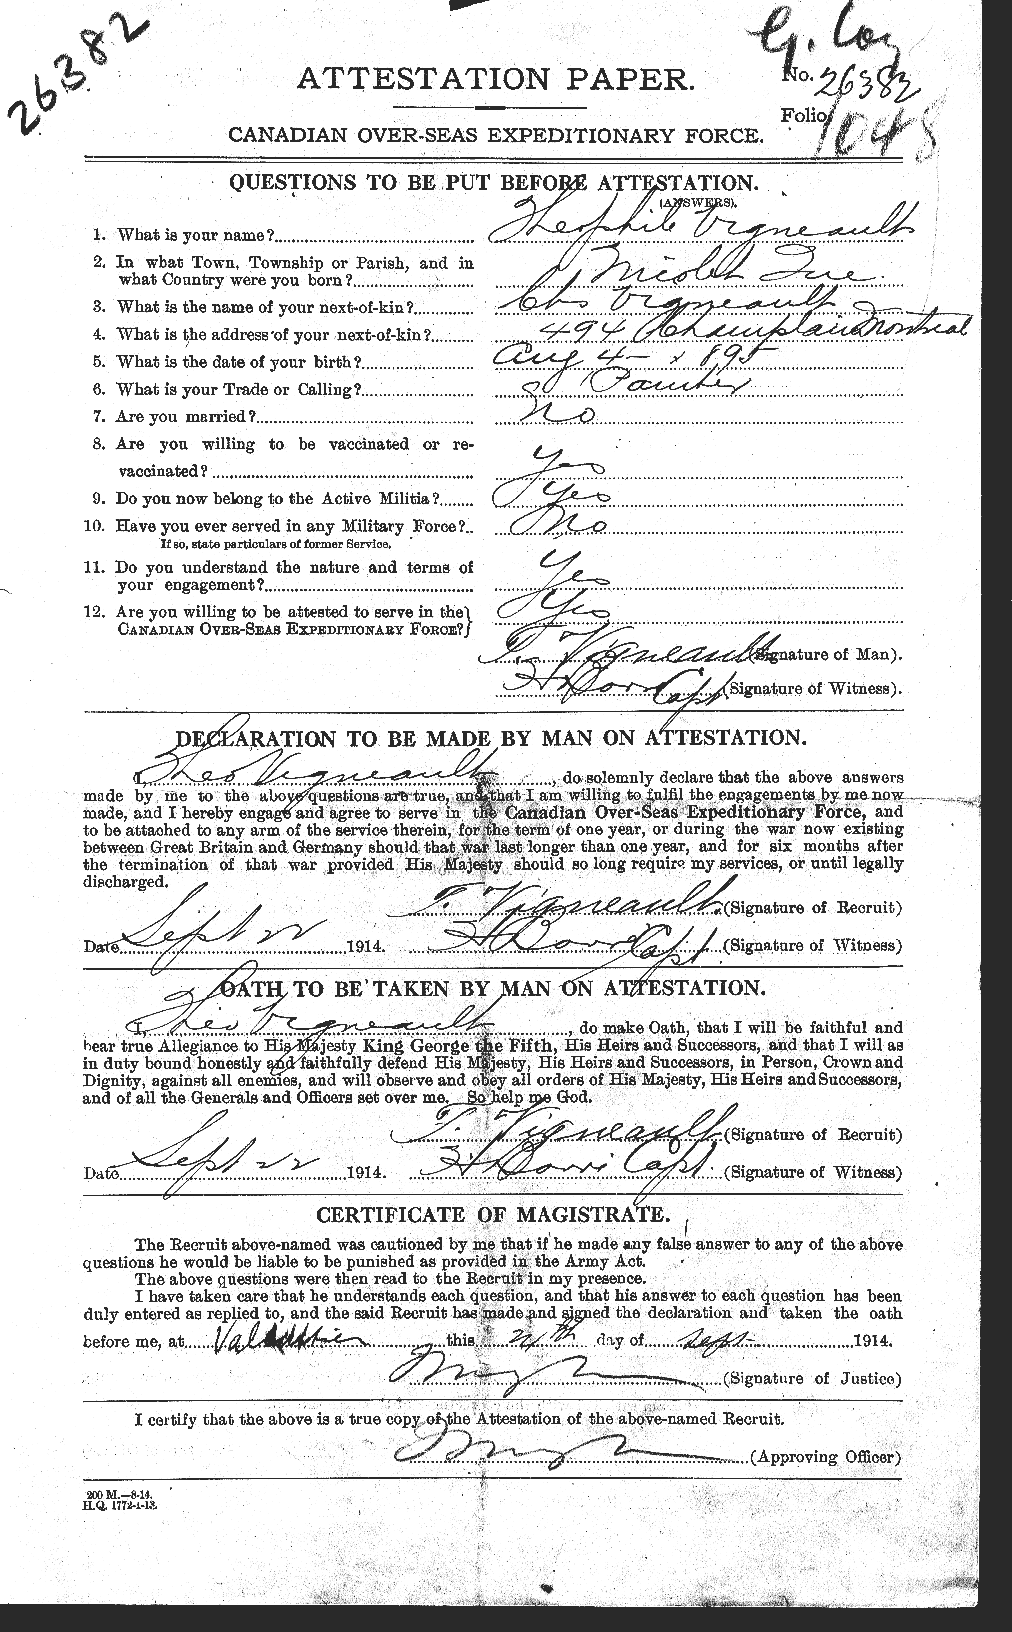 Dossiers du Personnel de la Première Guerre mondiale - CEC 653704a